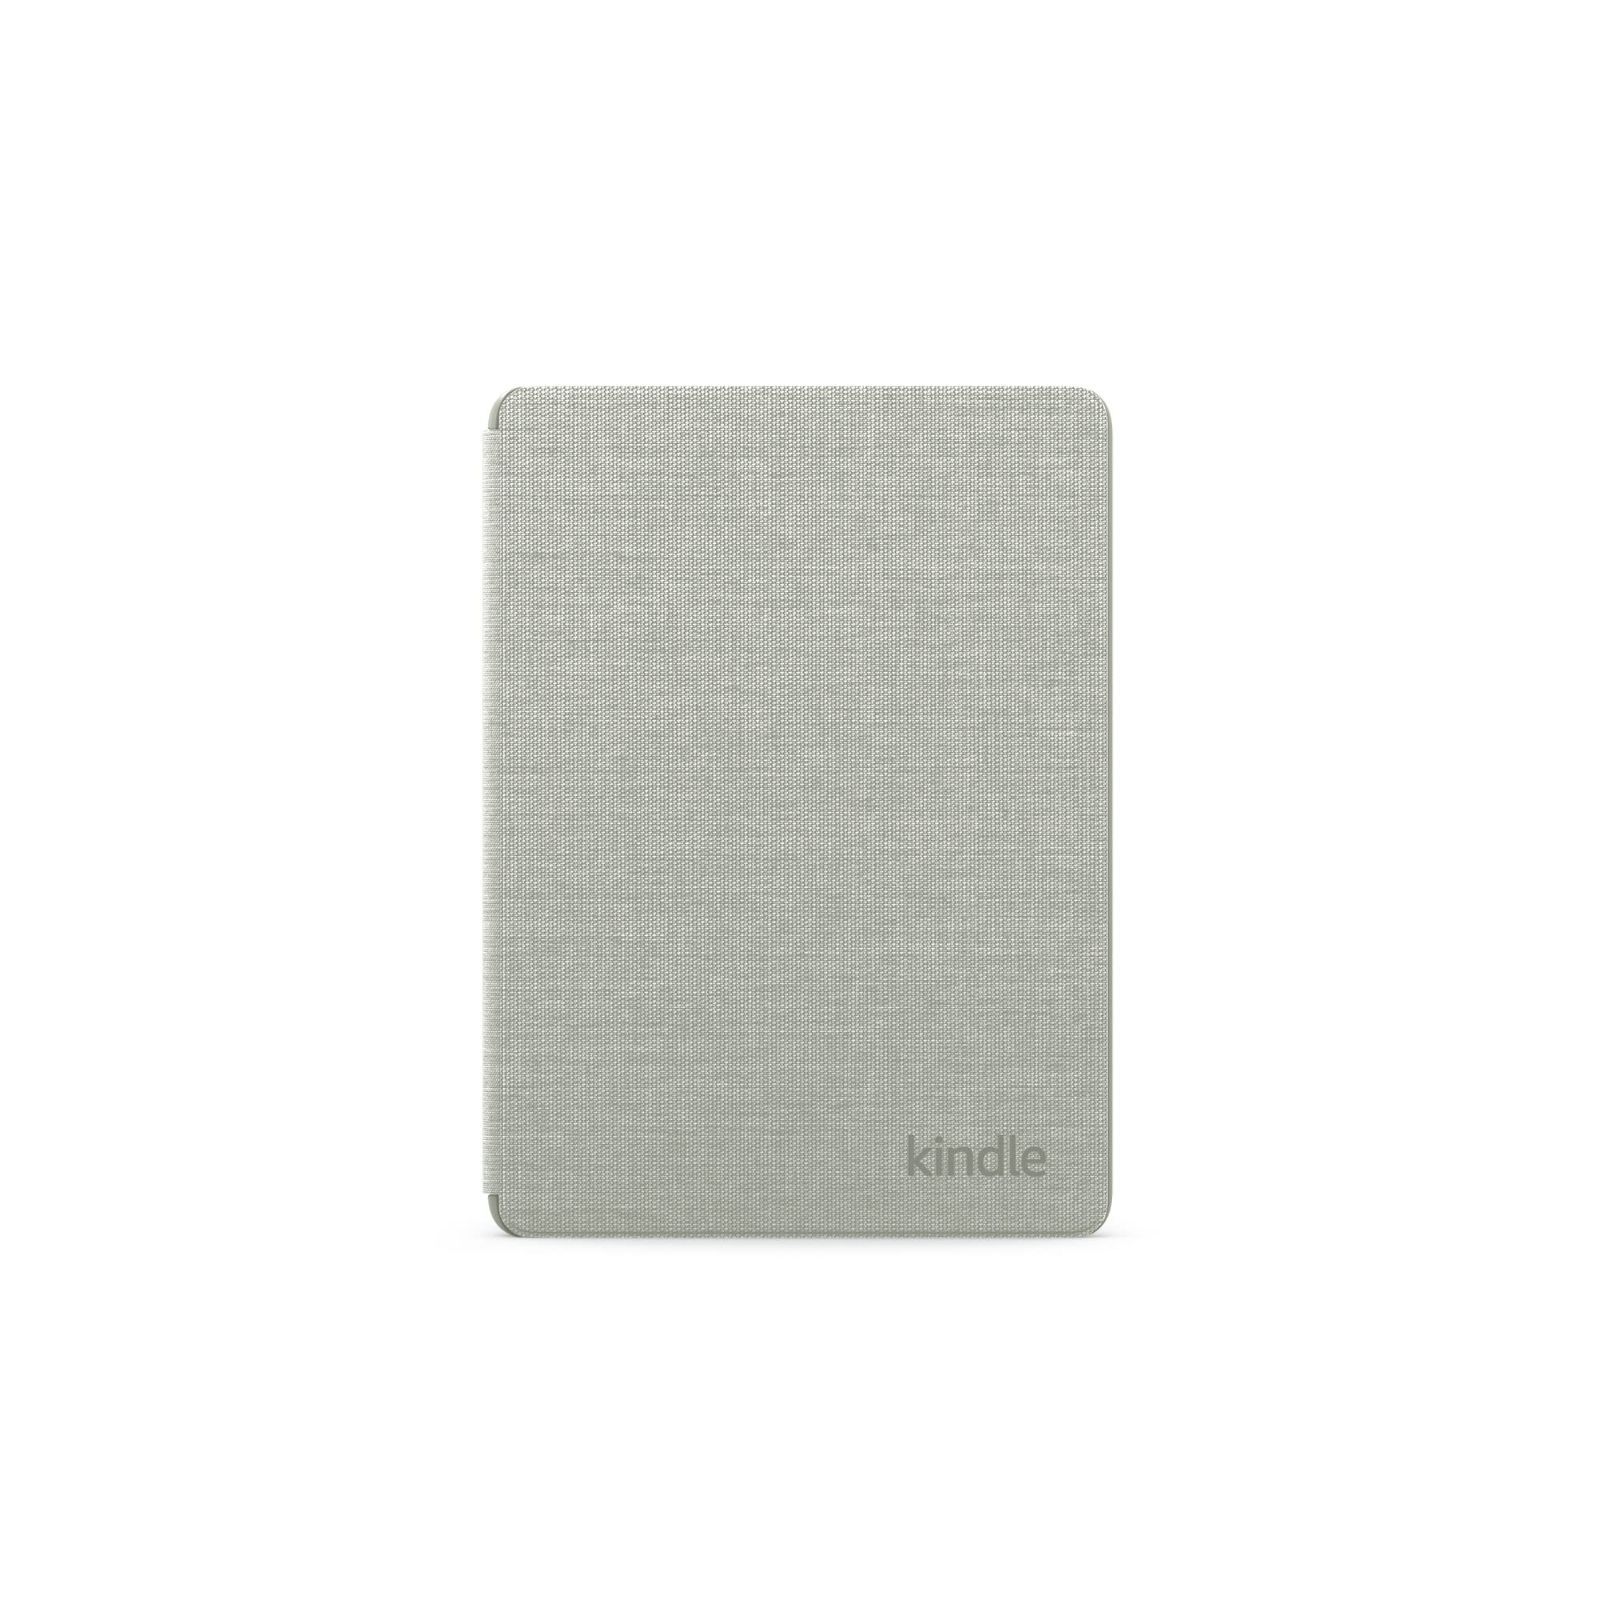 特価商品】Paperwhite・Kindle 【Kindle Paperwhiteシグニチャー